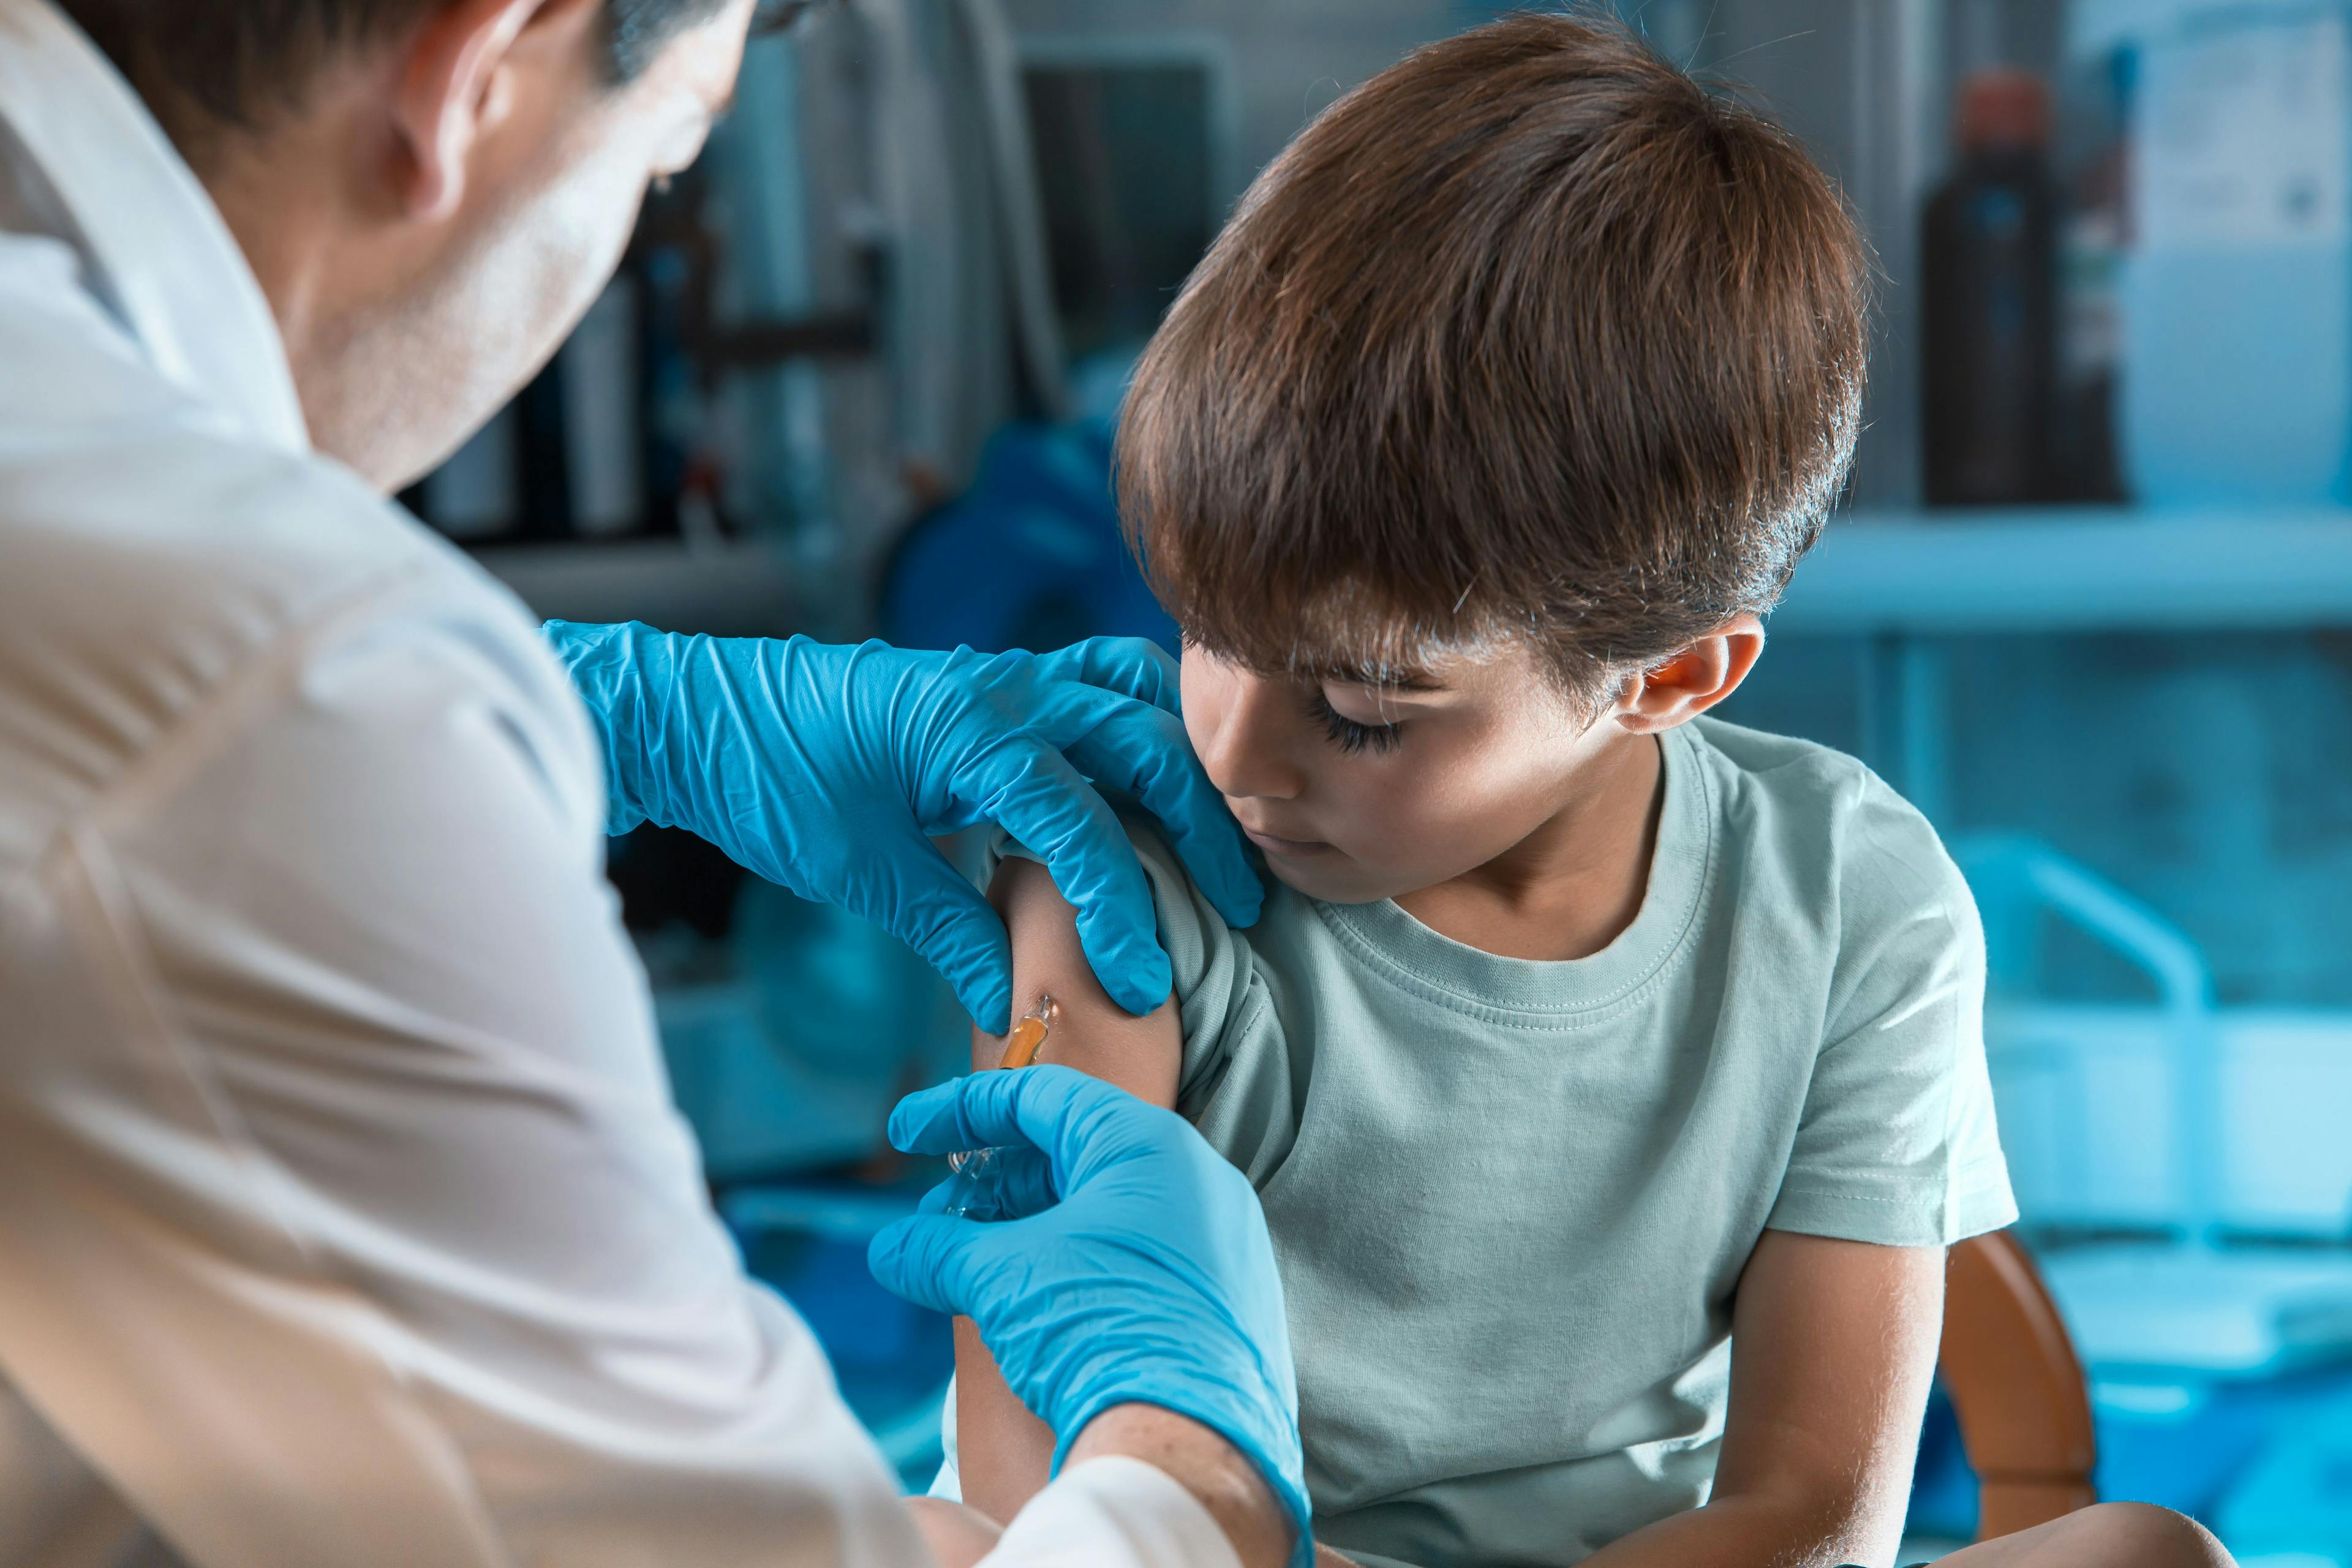 FDA panel recommends Pfizer COVID-19 vaccine for children